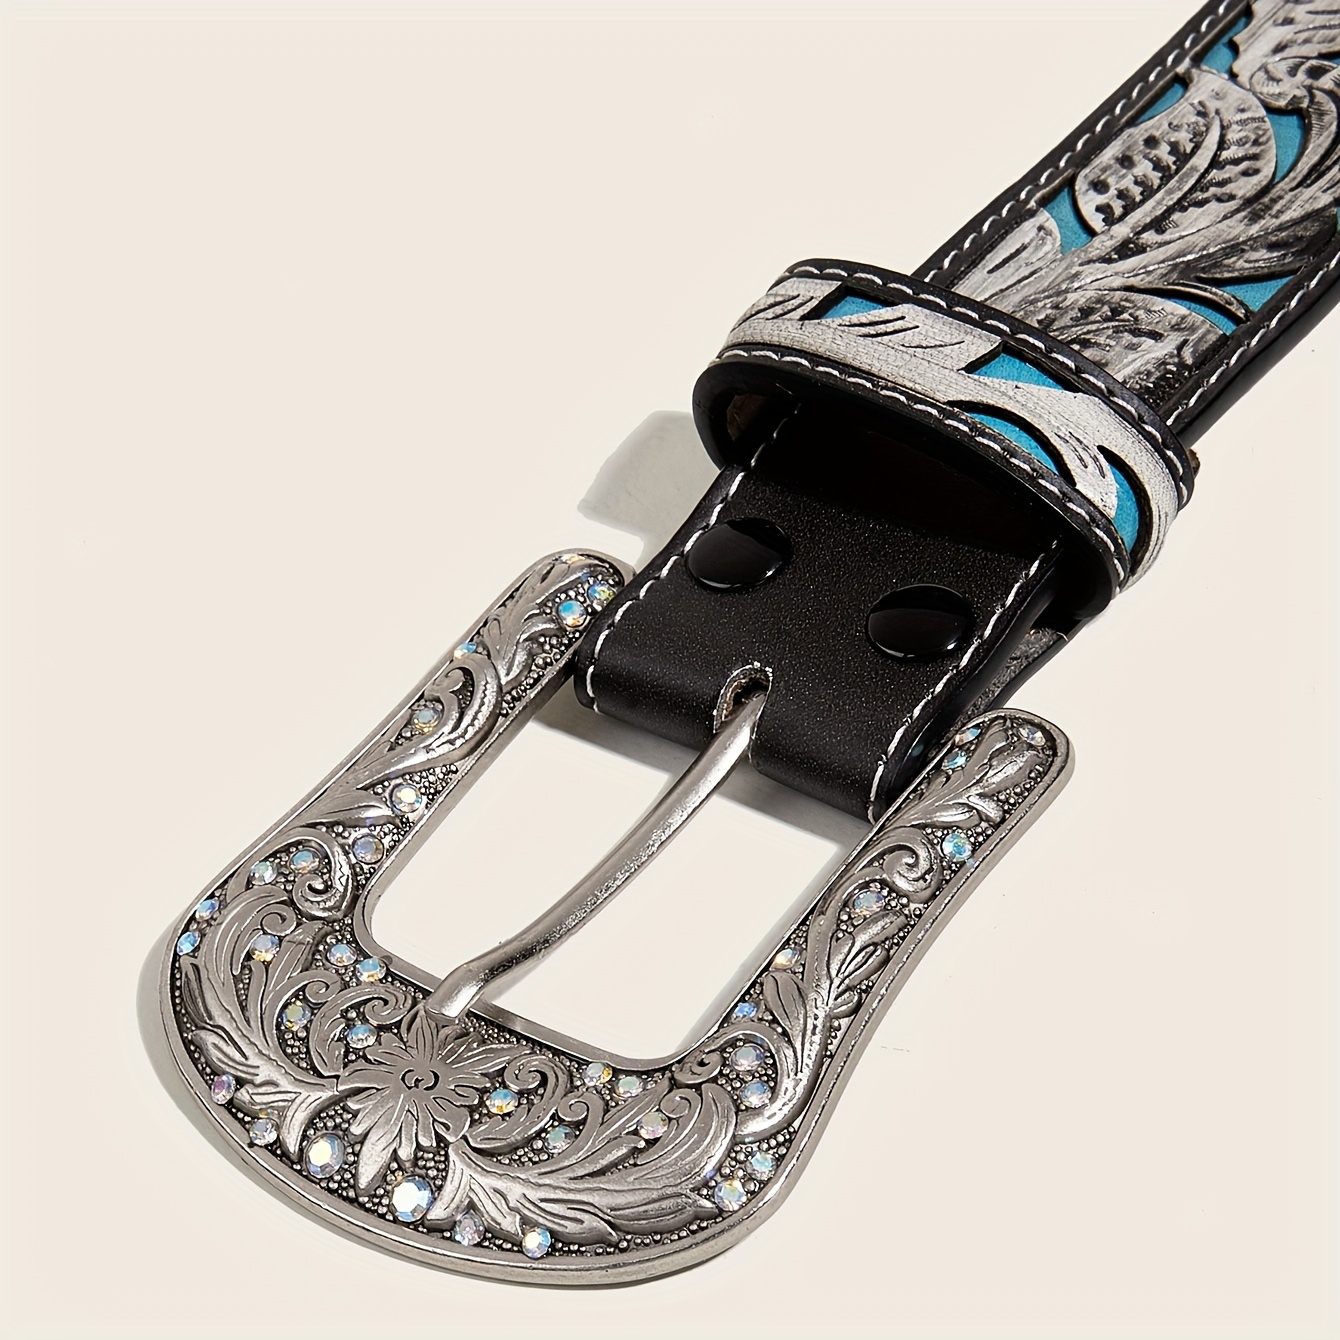 Cinturones para hombre de diseño: cinturones de cuero